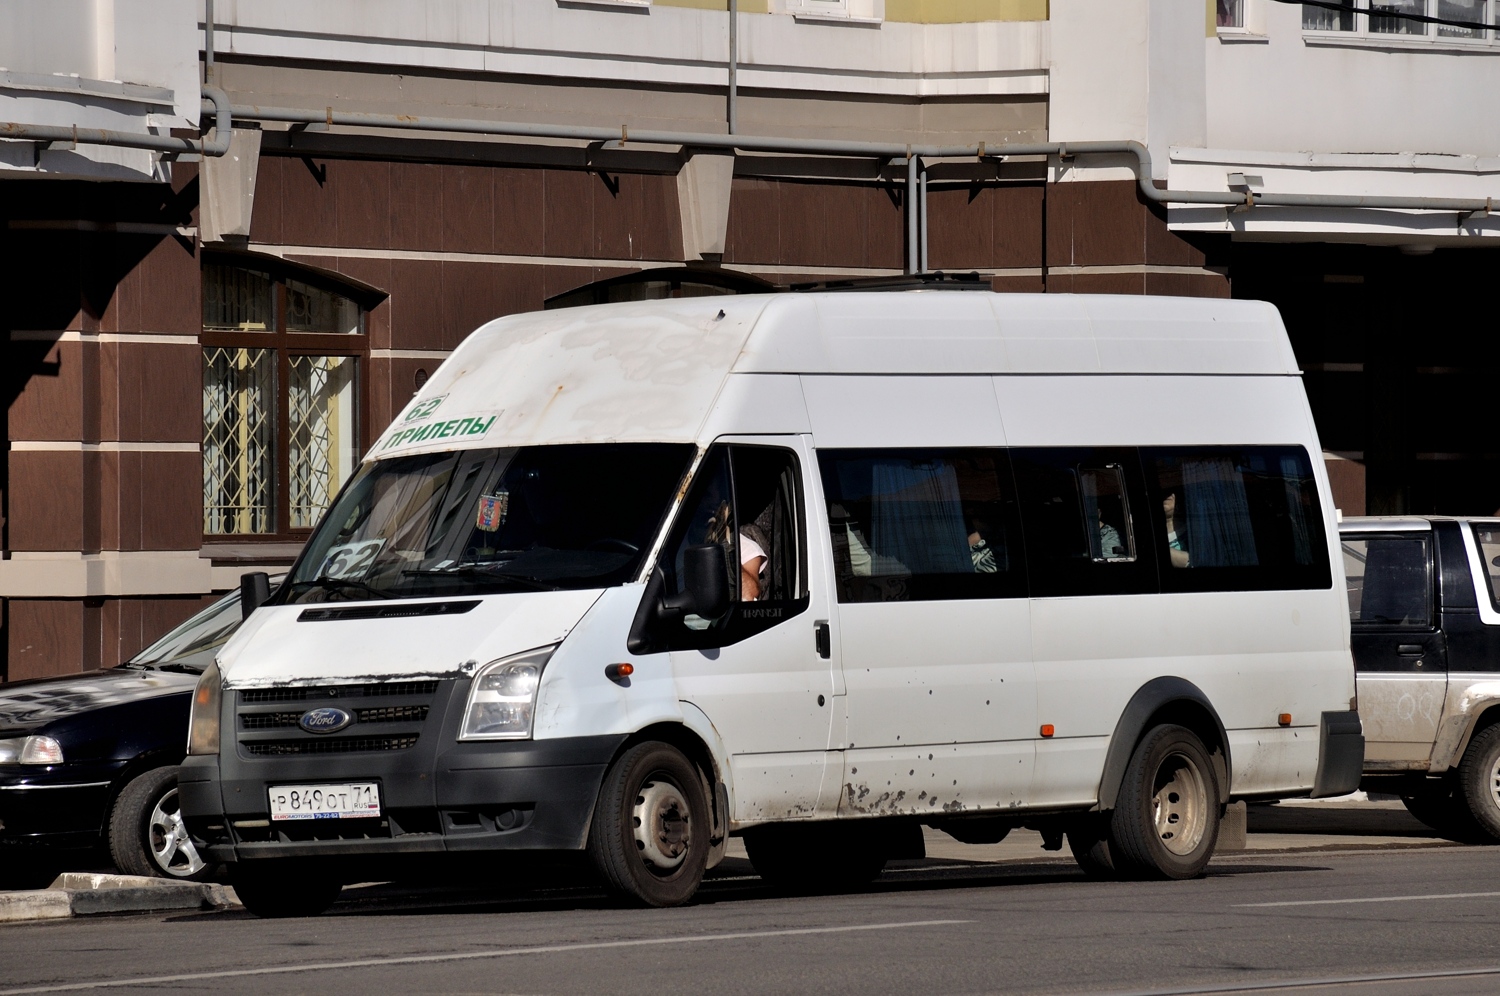 Tula, Nizhegorodets-222702 (Ford Transit) # Р 849 ОТ 71